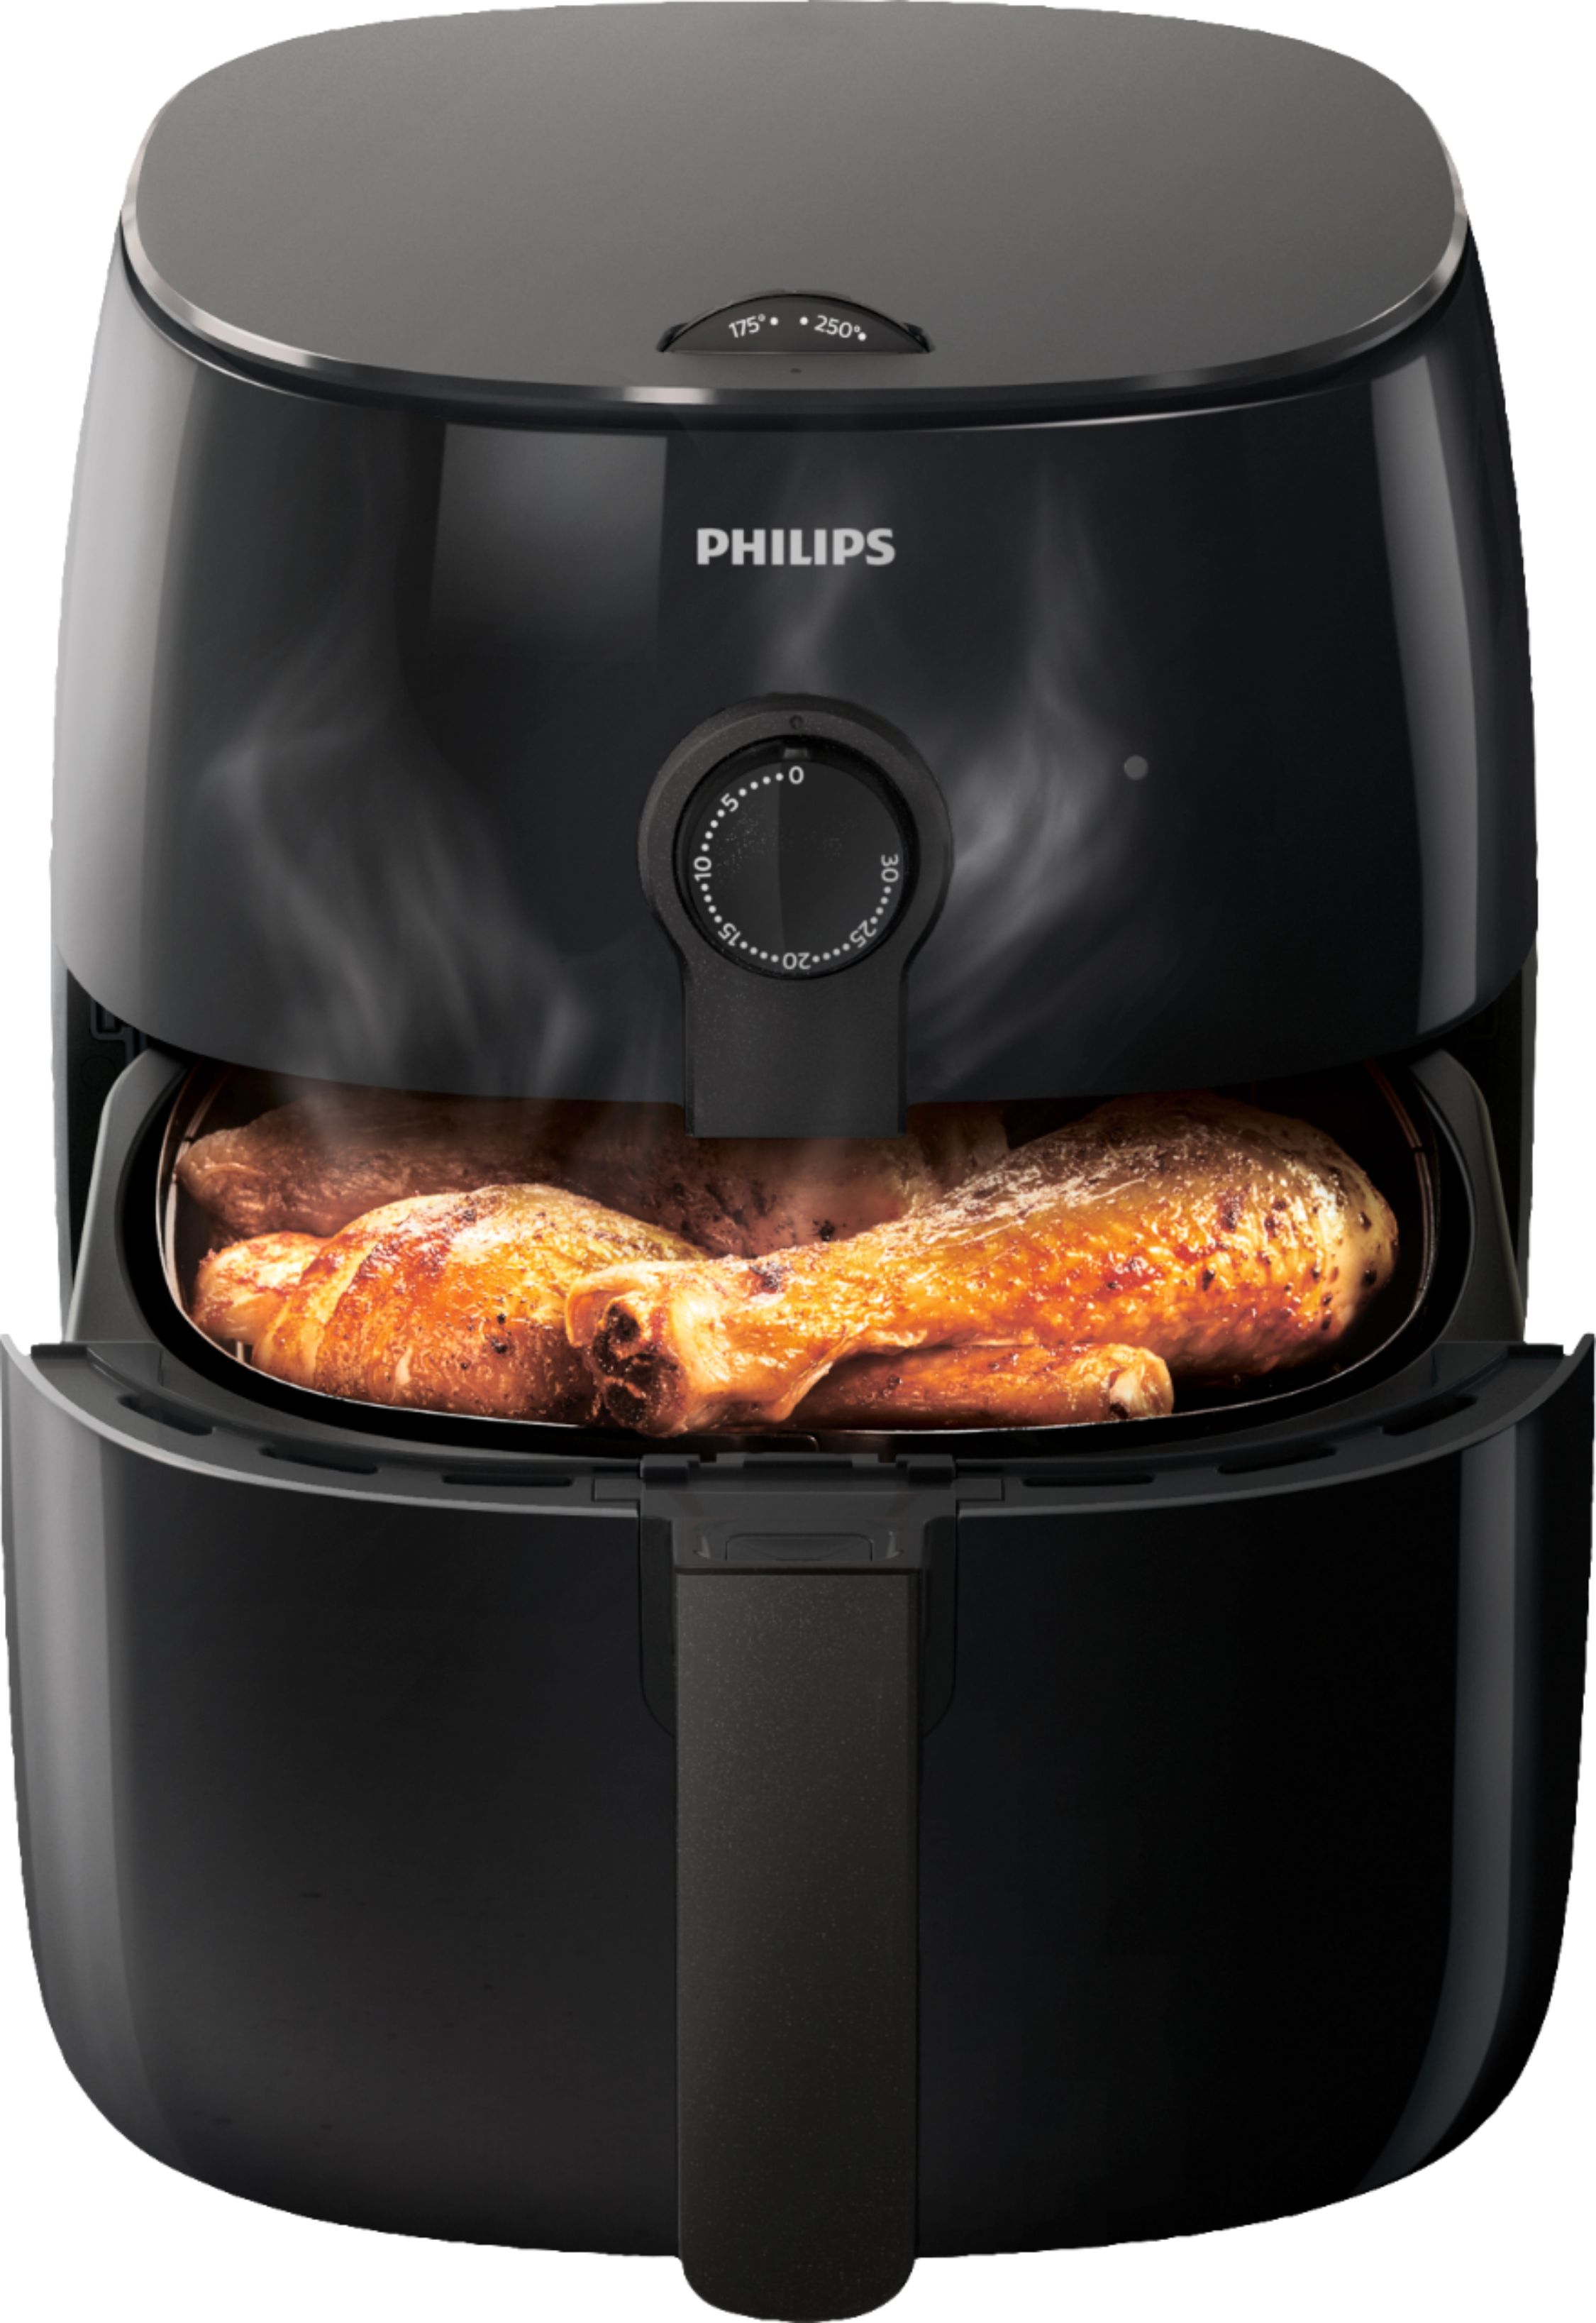 Customer Reviews: Philips Air Fryer Black HD9721/96 - Best Buy